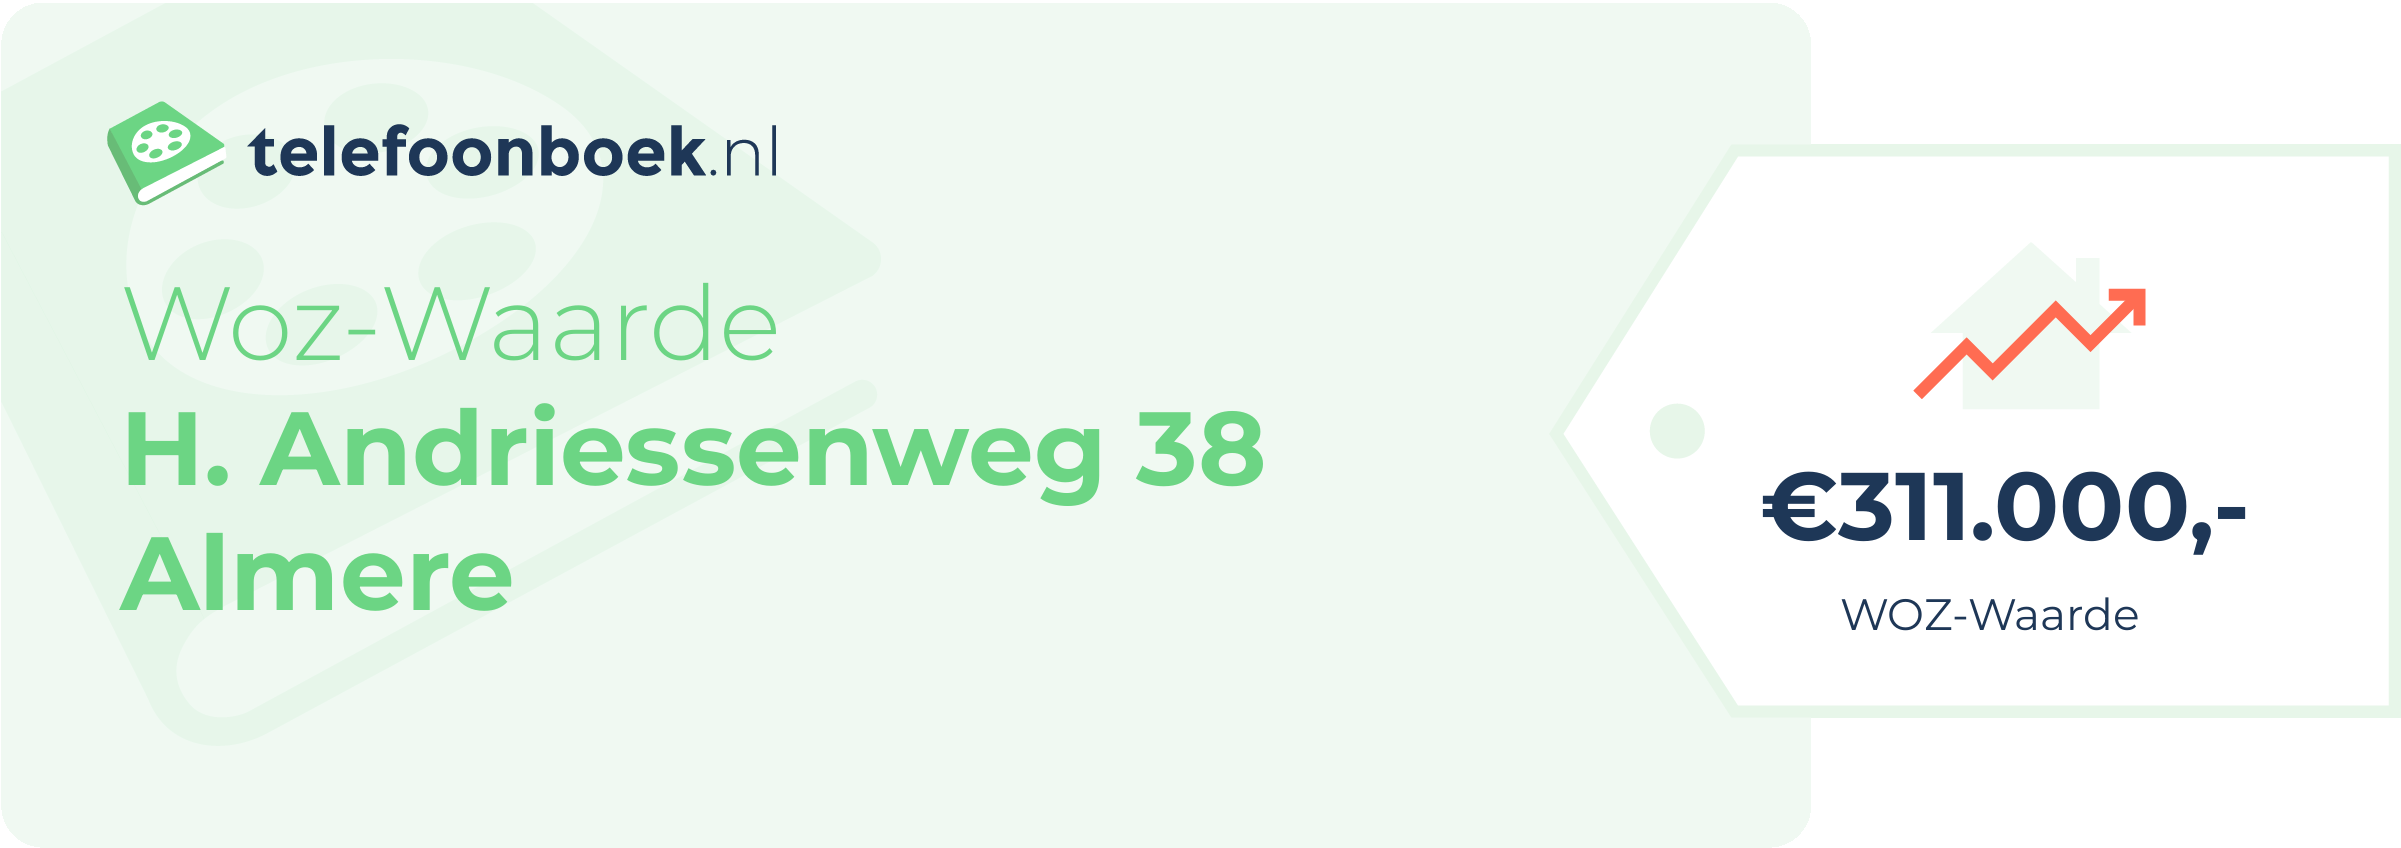 WOZ-waarde H. Andriessenweg 38 Almere